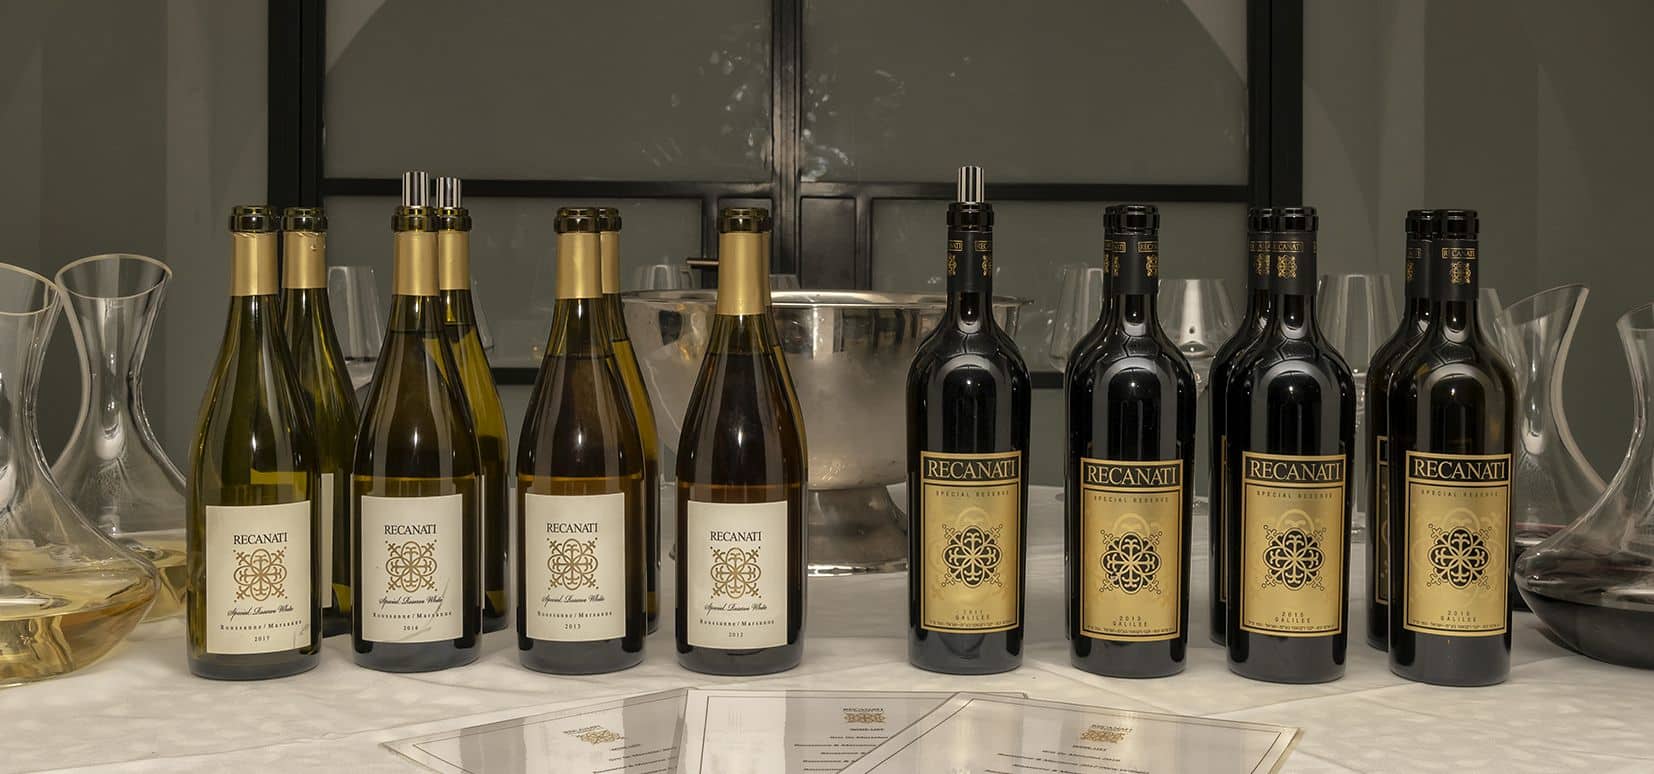 השקת יינות הדגל רקנאטי ספיישל רזרב לבן 2017 ורקנאטי ספיישל רזרב אדום 2016 ולצדם יינות ספריה. צילום איל גוטמן